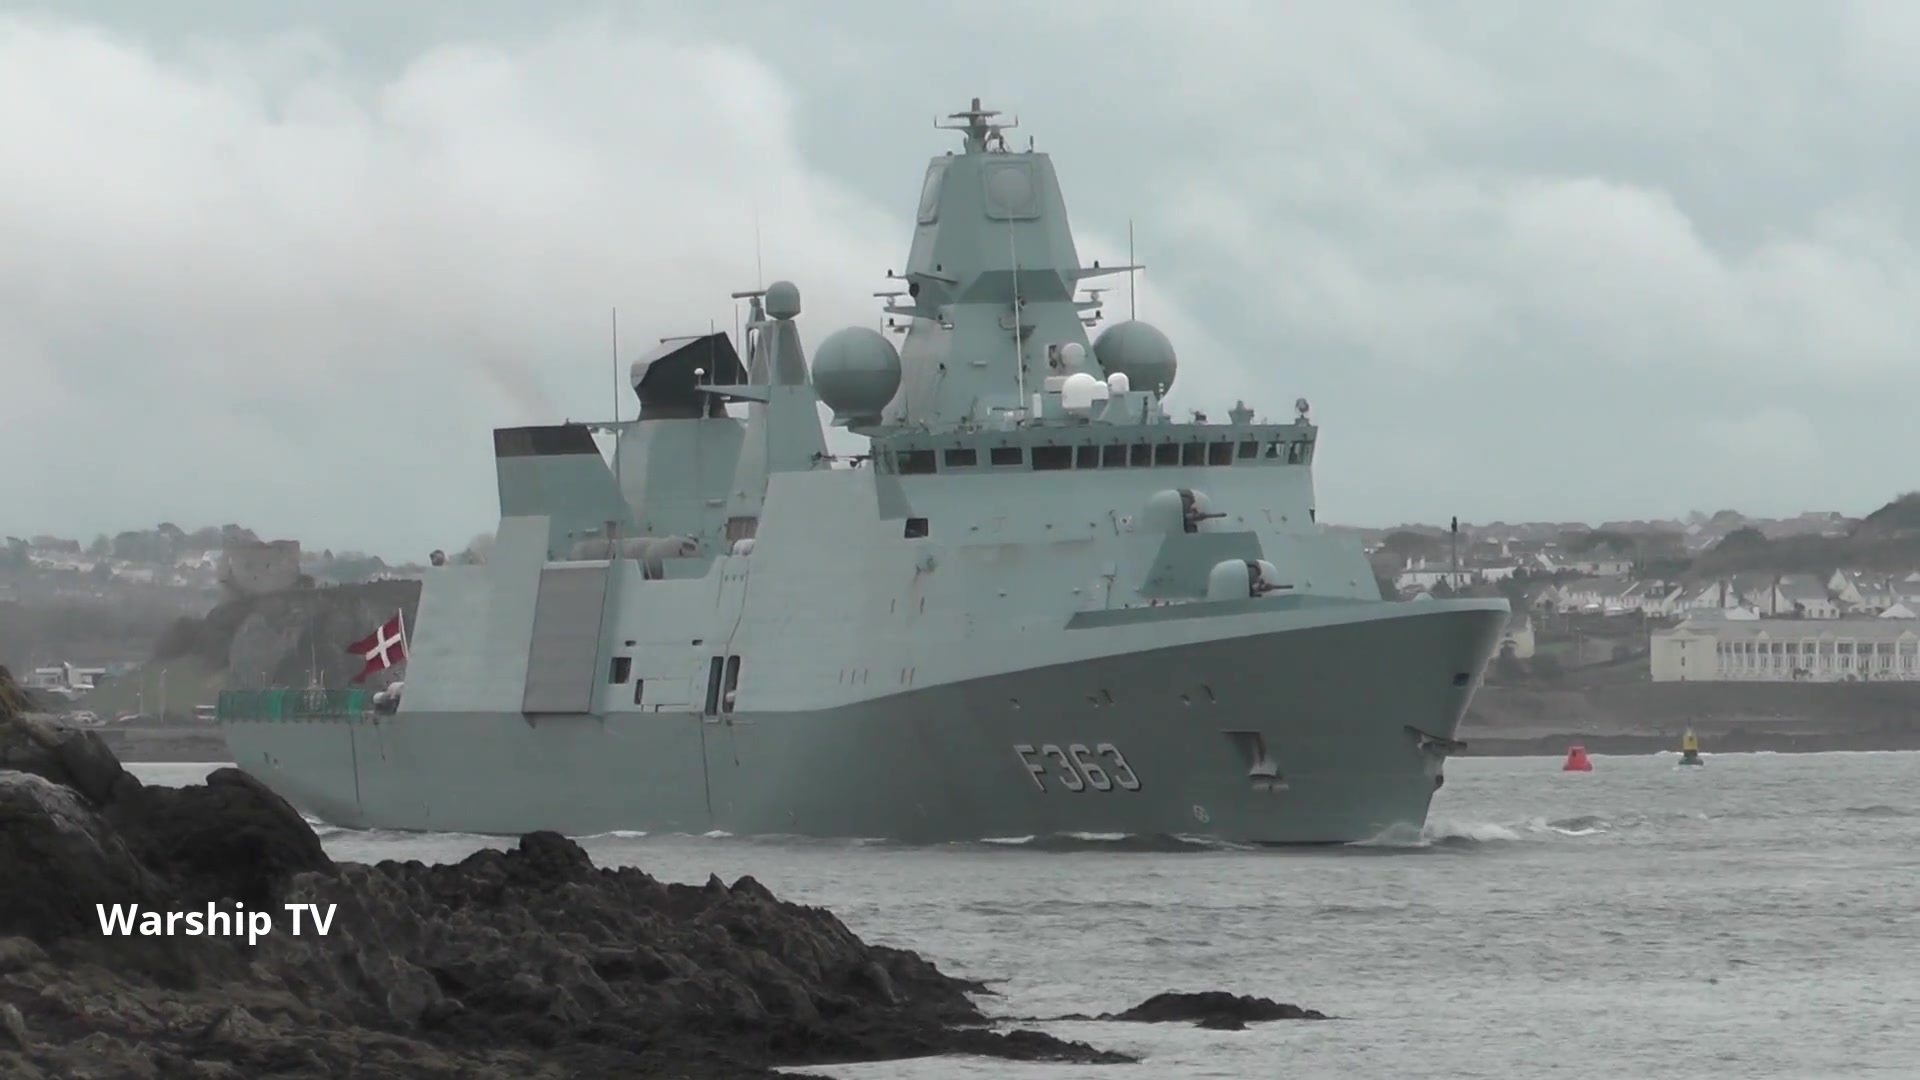 丹麦皇家海军艾弗·哈费级(f363)尼尔斯·朱埃尔号护卫舰抵达德文波特